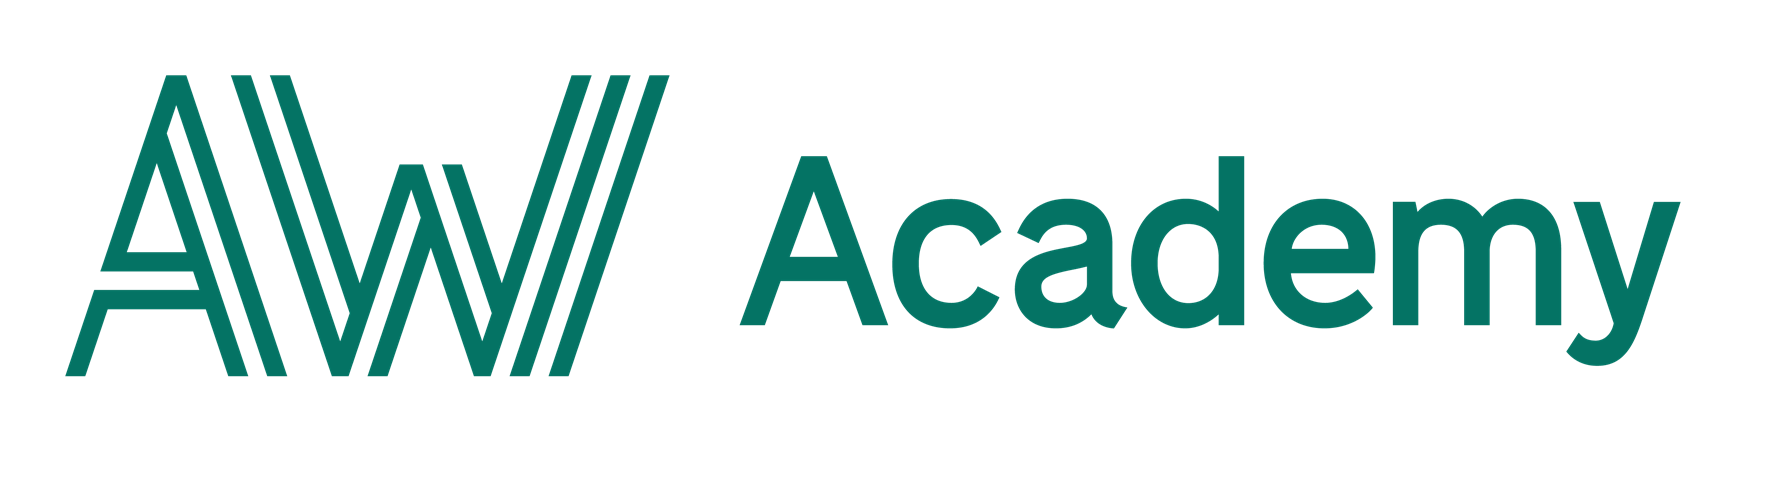 Academic Work - Lär dig C#.NET Fullstack via AW Academy och starta din nya karriär inom IT-branschen